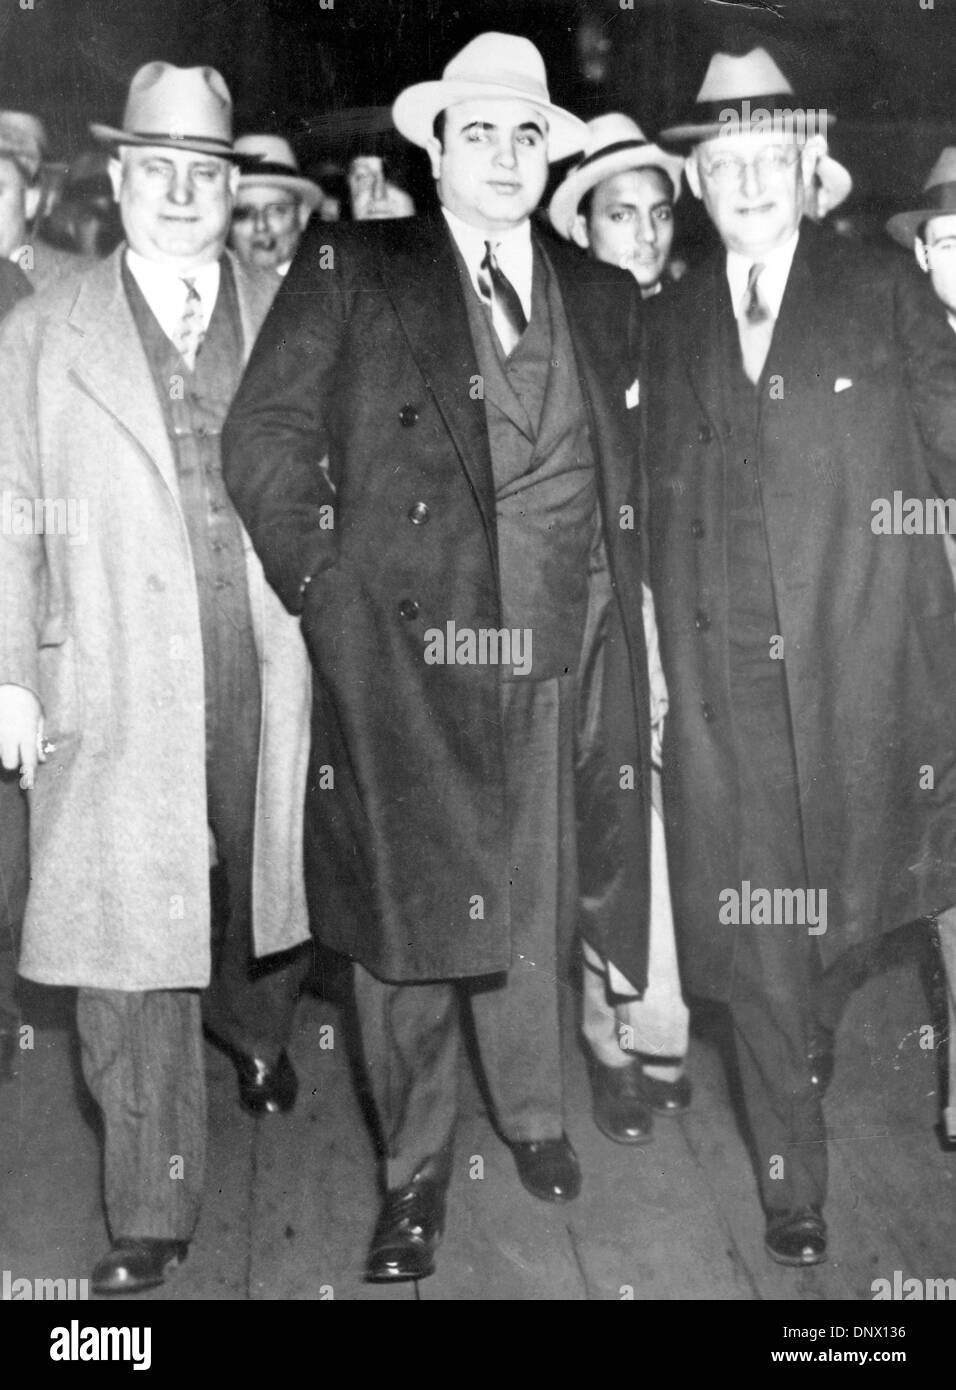 14 maggio 1929 - New York, NY, STATI UNITI - AL CAPONE (C) con LAUBENHEIMER MARSHALL (R) in New York. Al Capone è migliori d'America noto gangster e la singola più grande simbolo del crollo della legge e dell'ordine negli Stati Uniti durante il 1920s divieto era. Capone ha avuto un ruolo di primo piano nelle attività illegali che la quaresima Chicago la sua reputazione come una città senza legge. (Credito Immagine: © KEYSTO Foto Stock